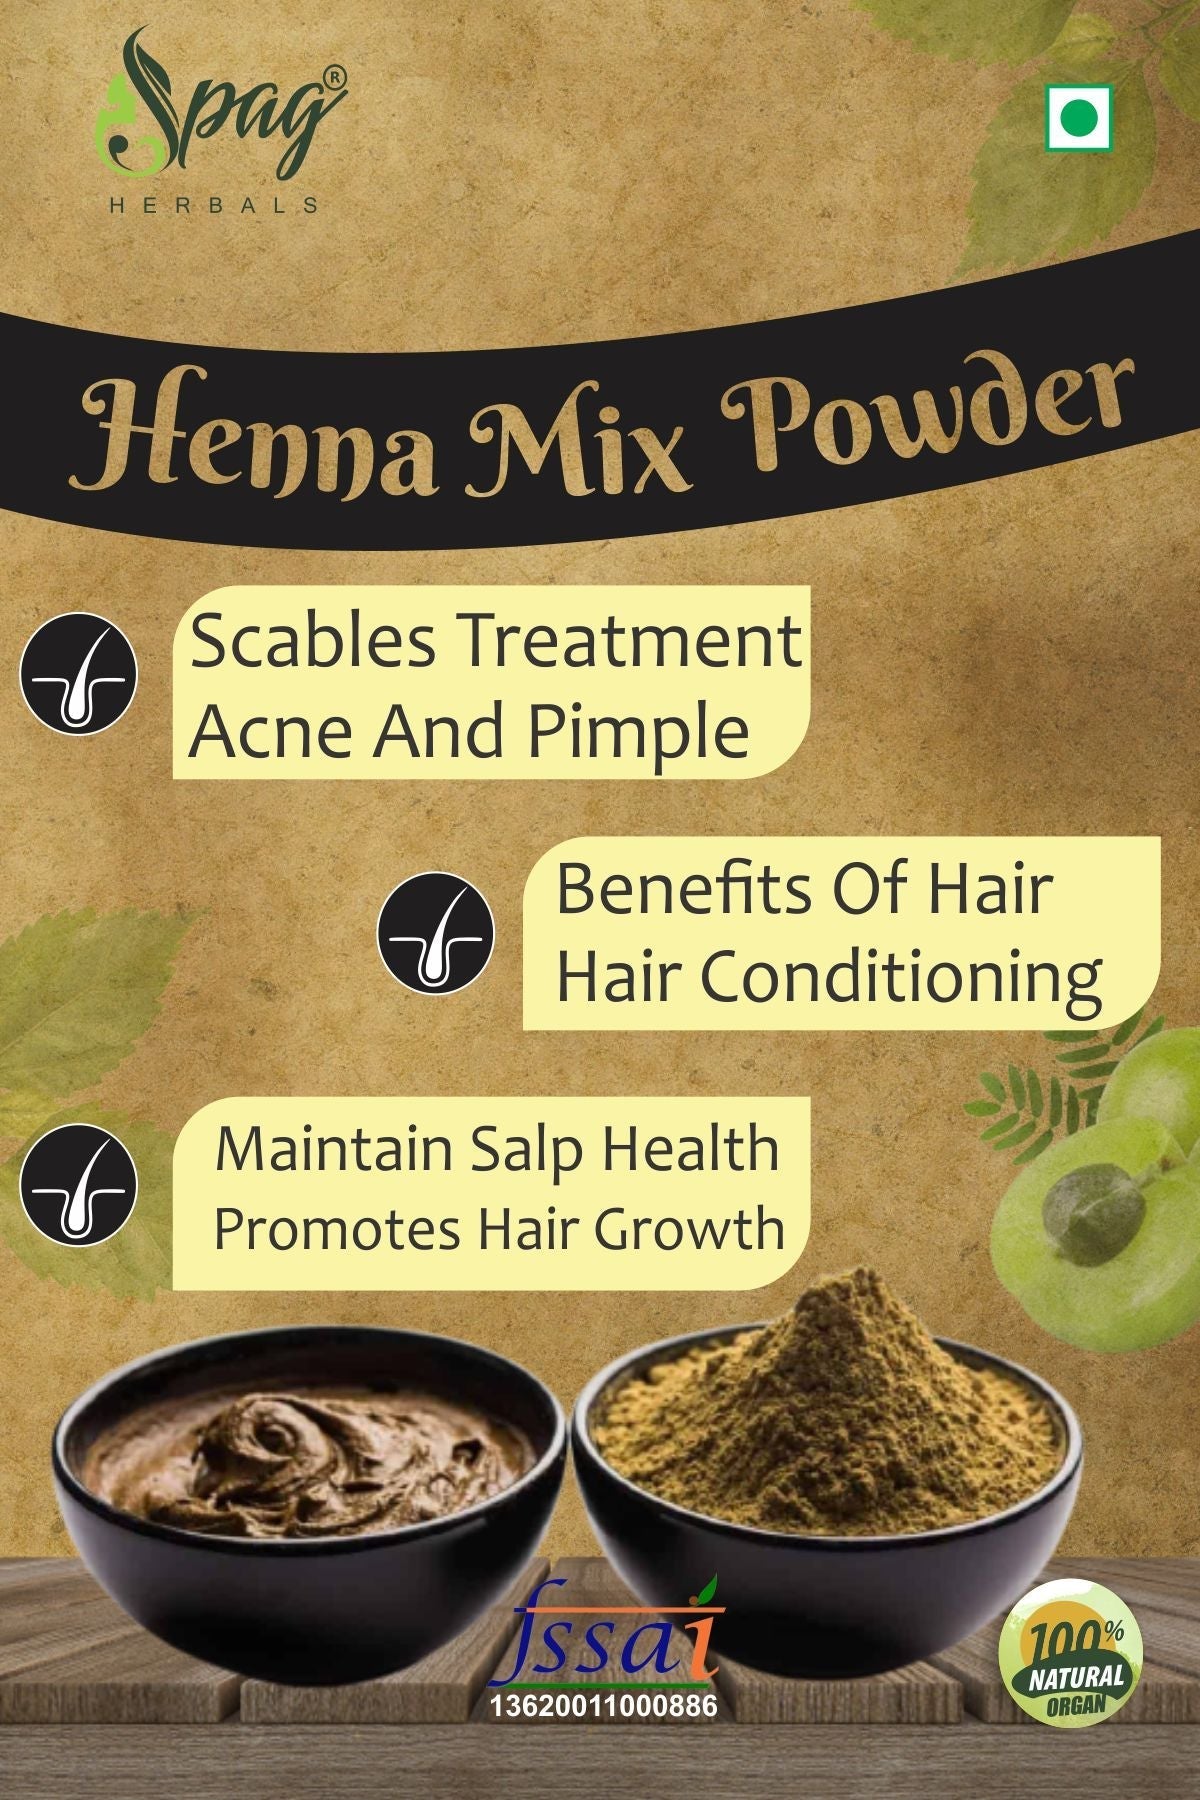 Spag Herbals Premium Henna Powder